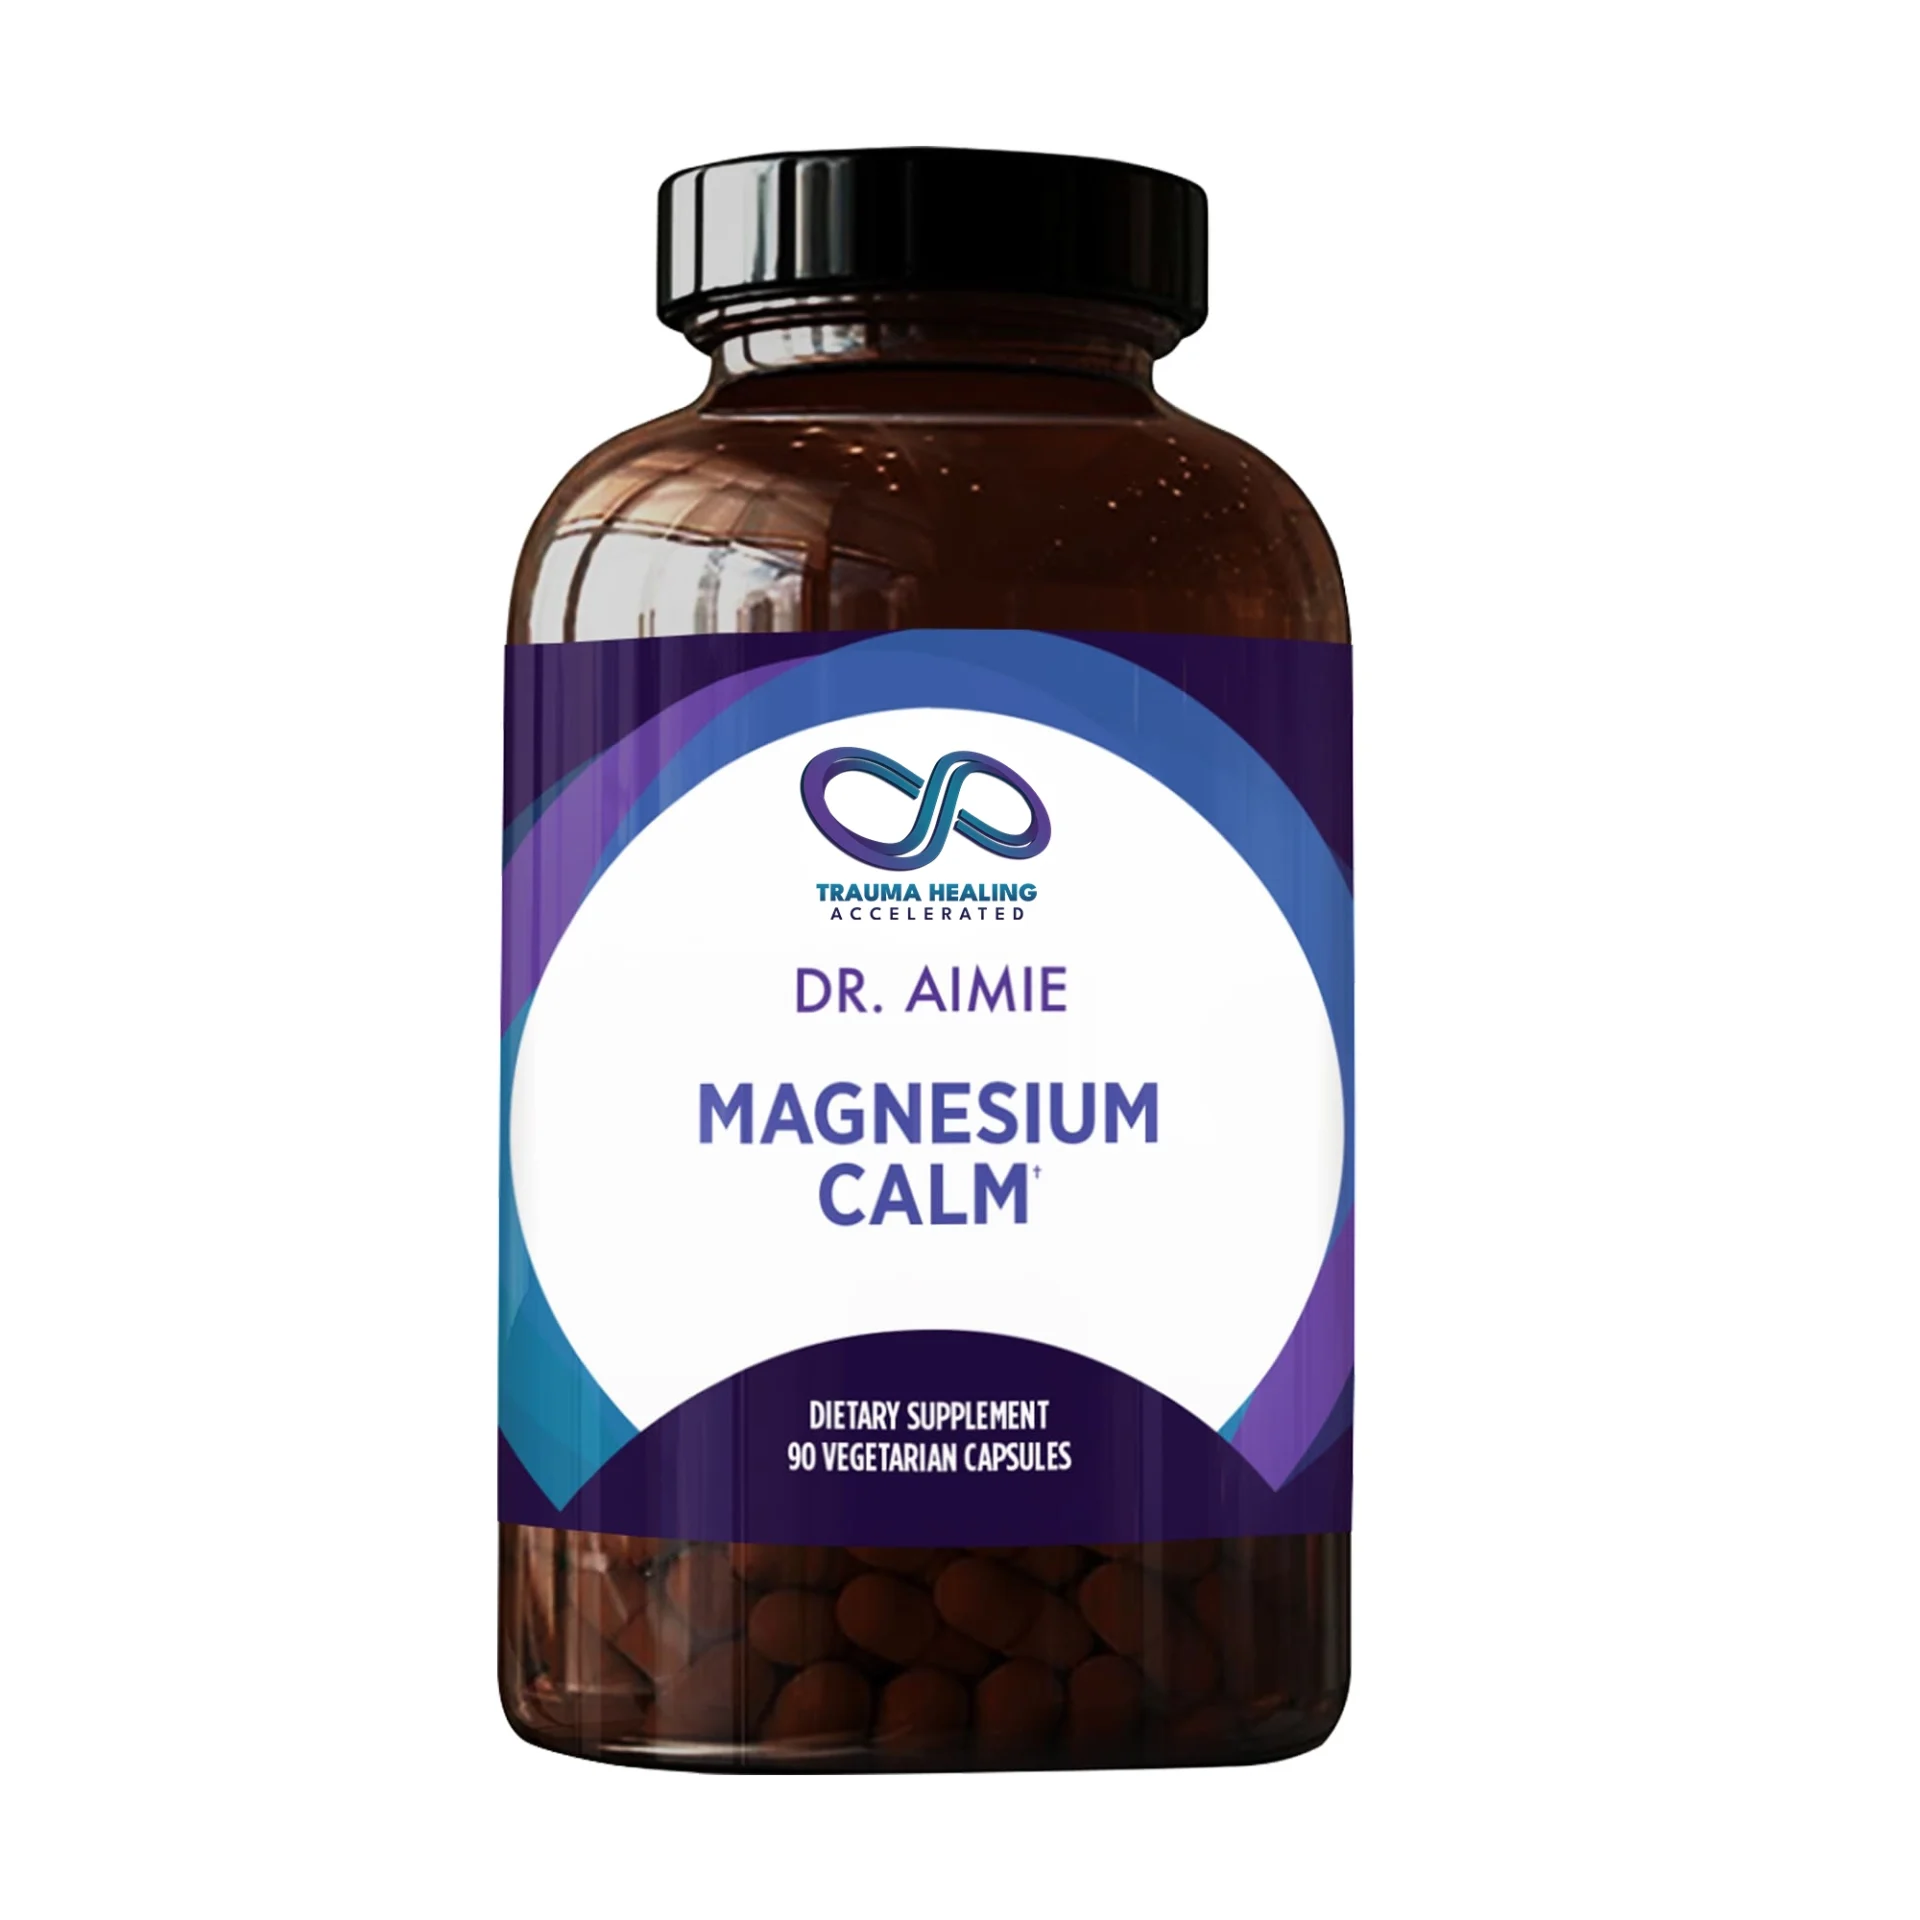 magnesium calm